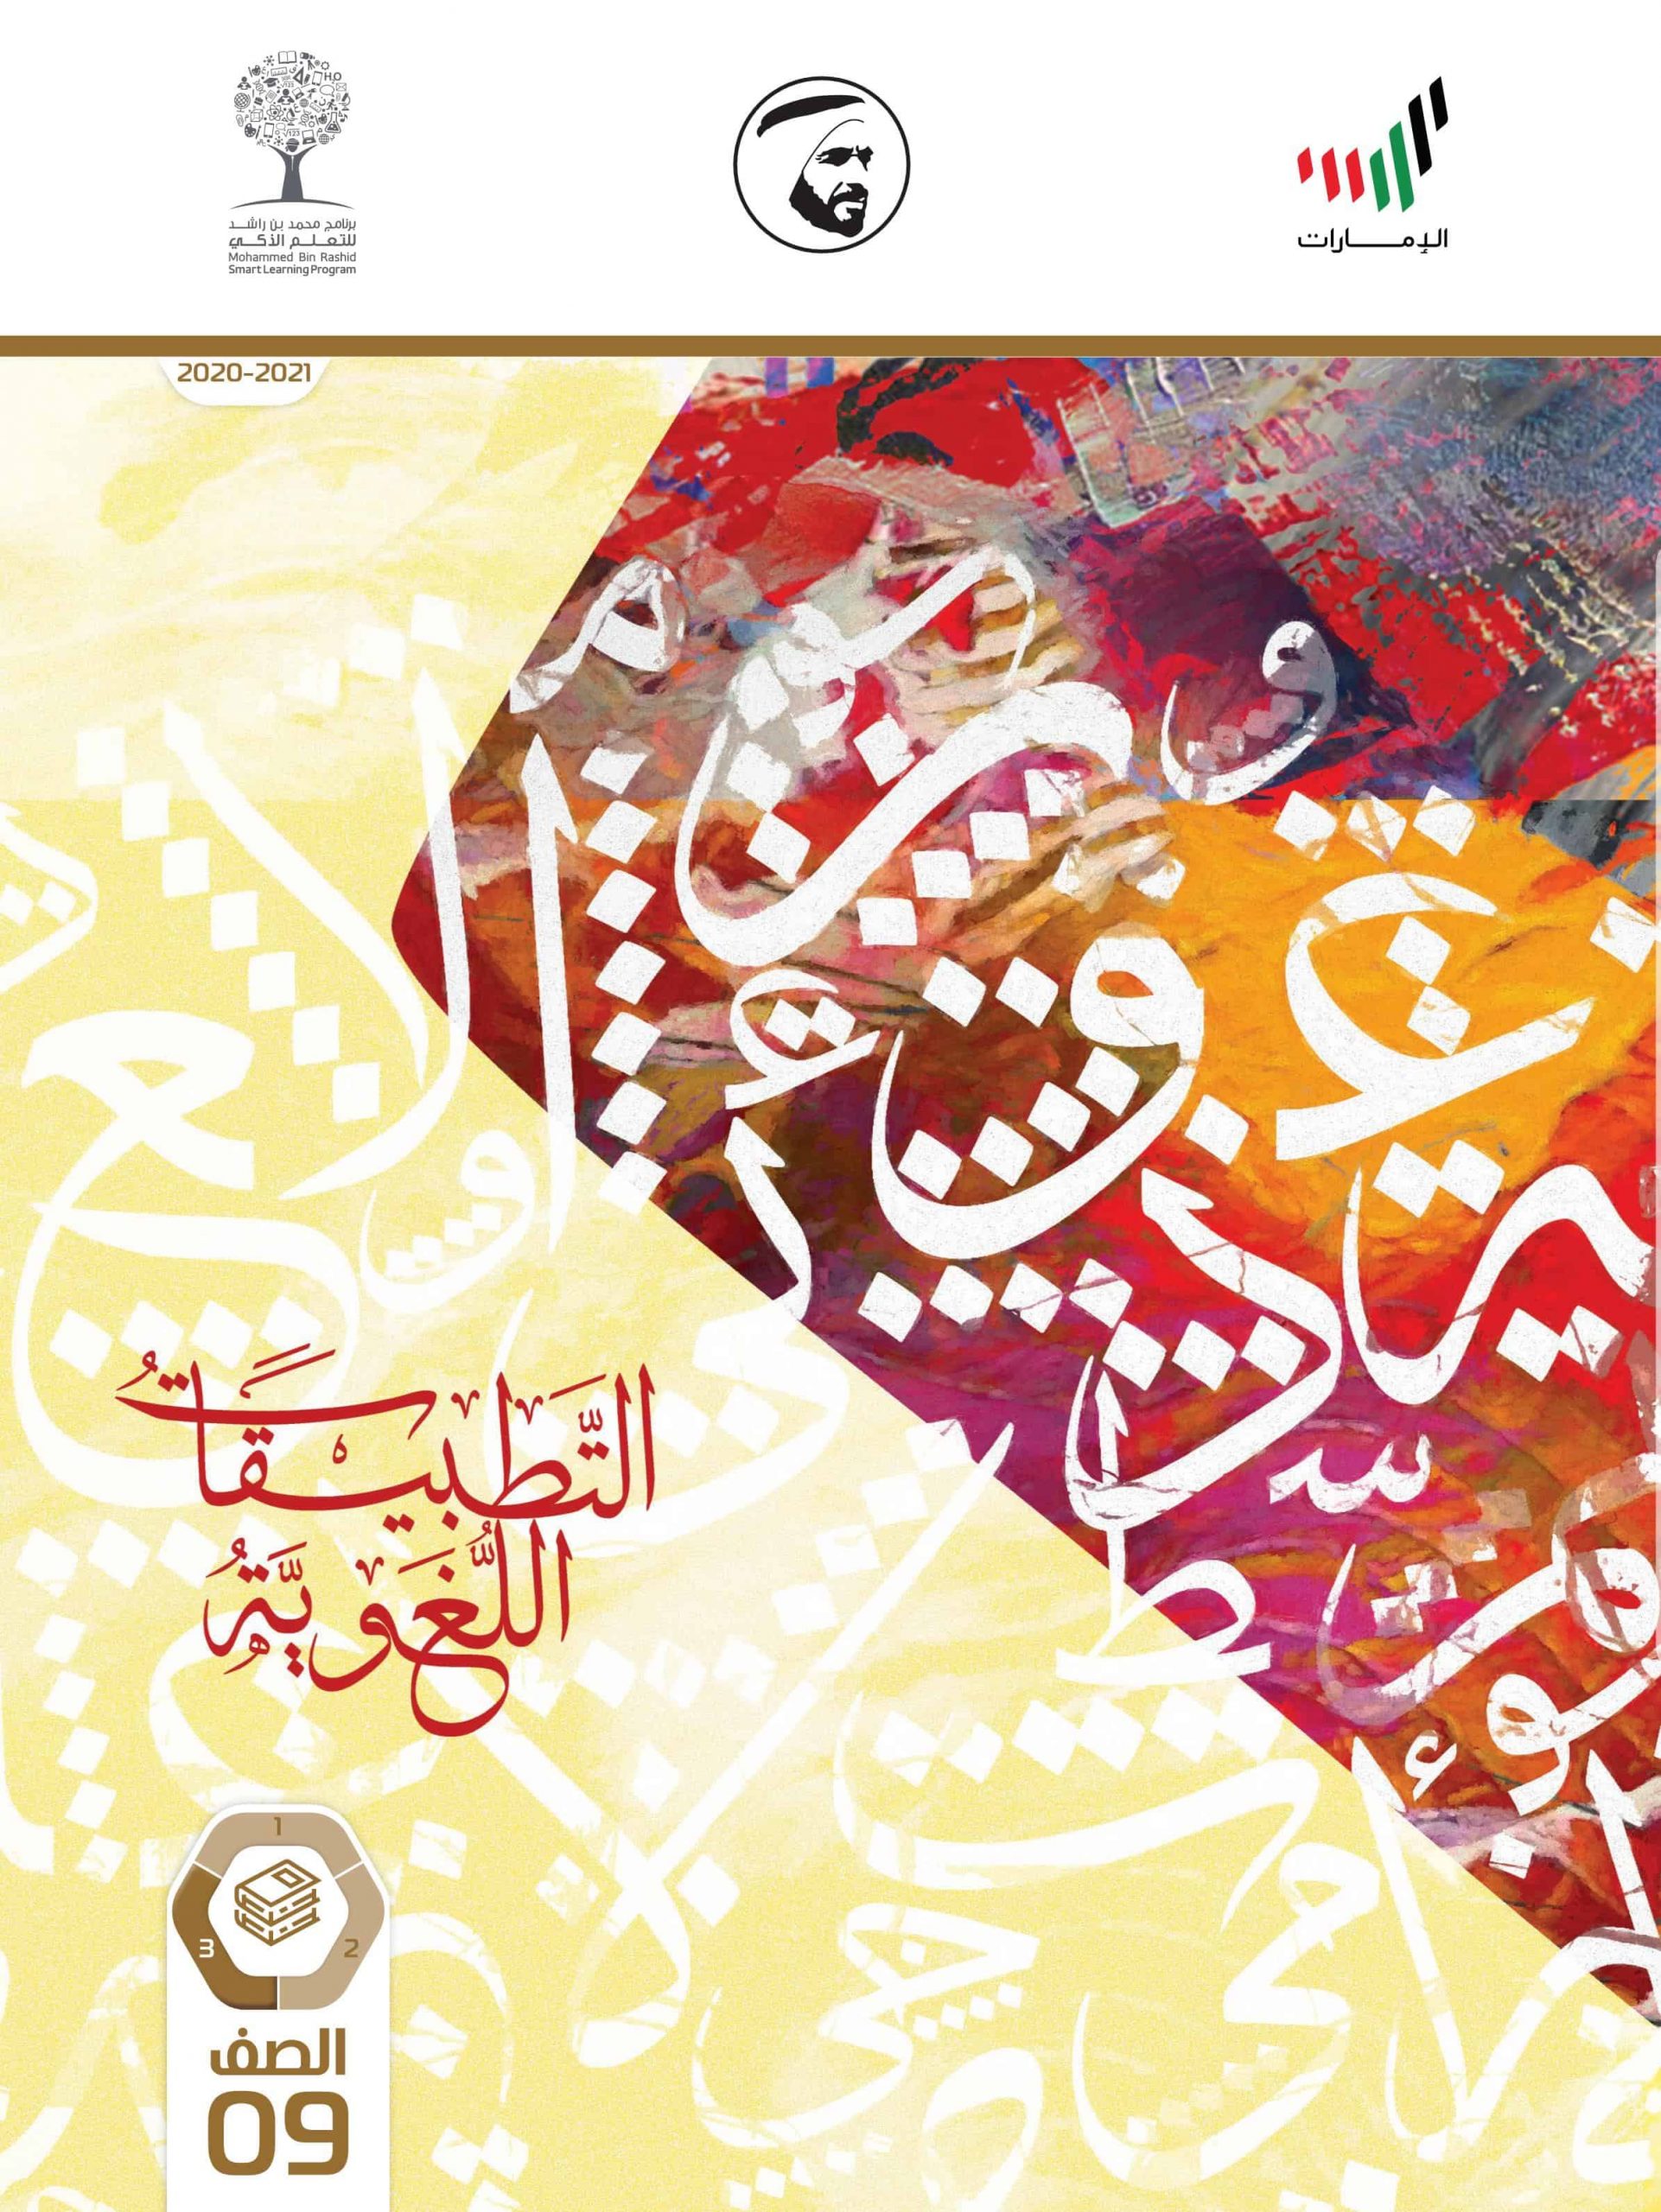 كتاب الطالب الفصل الدراسي الثالث 2020-2021 الصف التاسع مادة اللغة العربية 